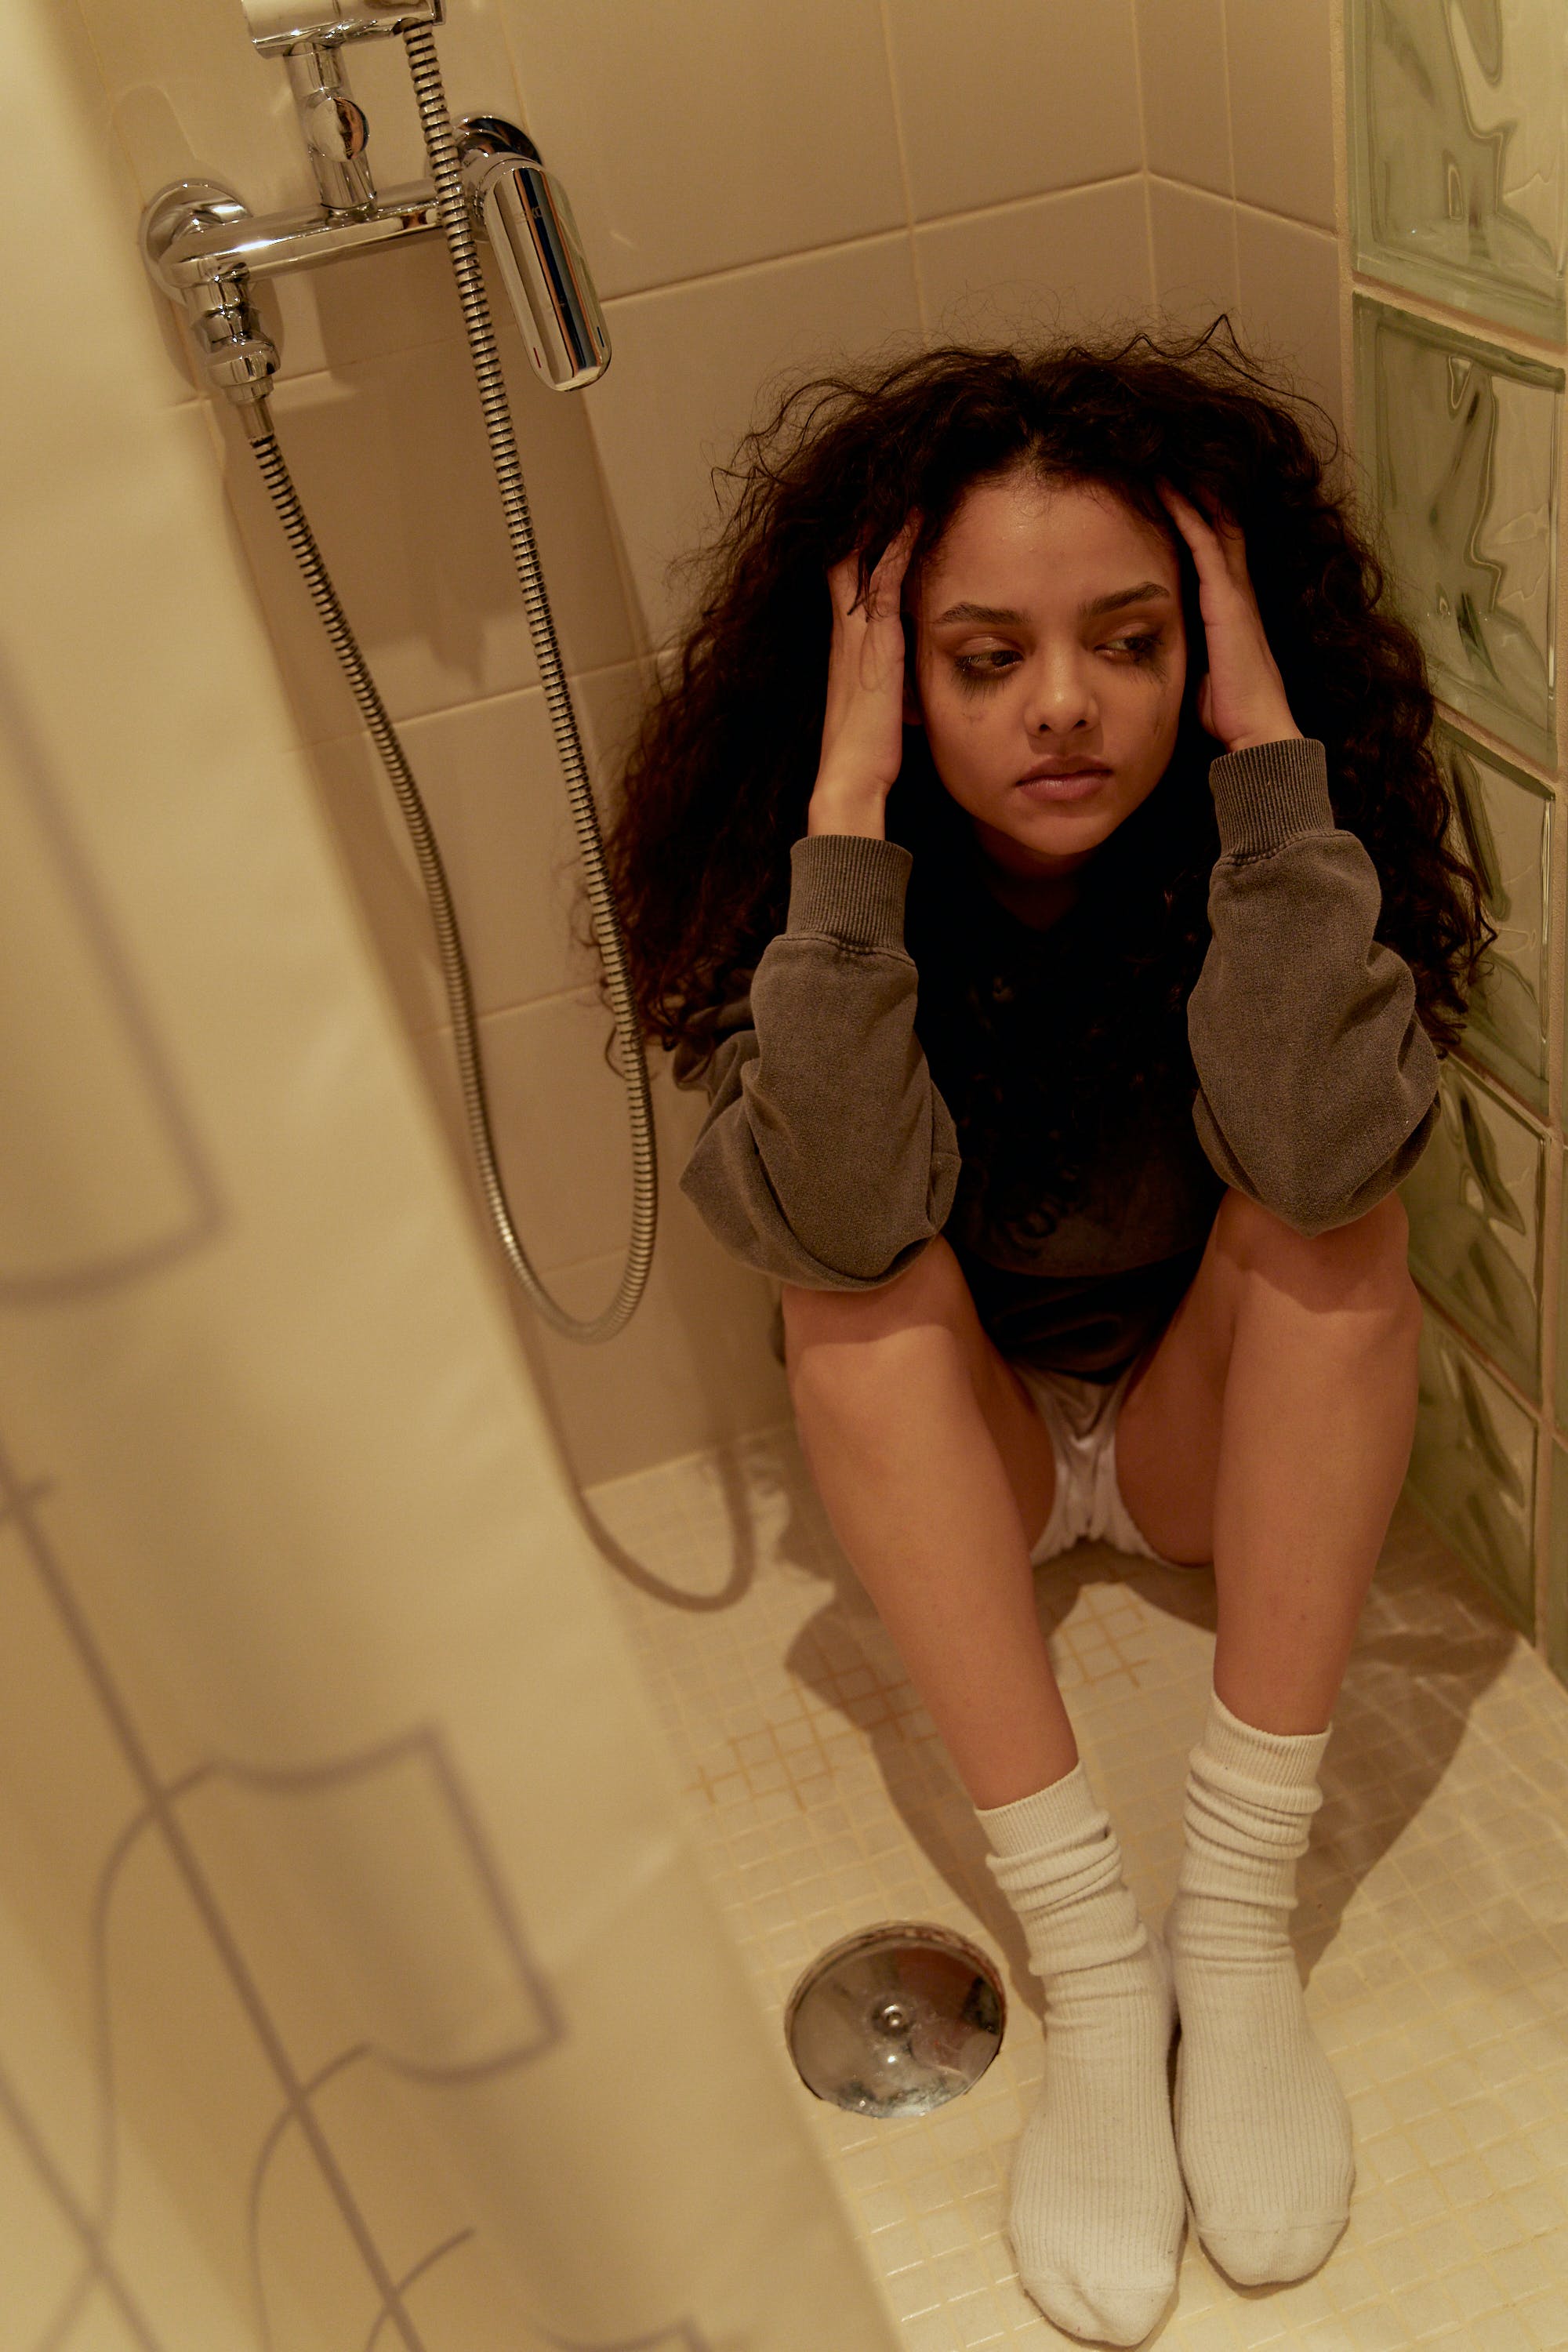 Une jeune femme bouleversée qui pleure en s'asseyant sur le sol d'une douche | Source : Pexels